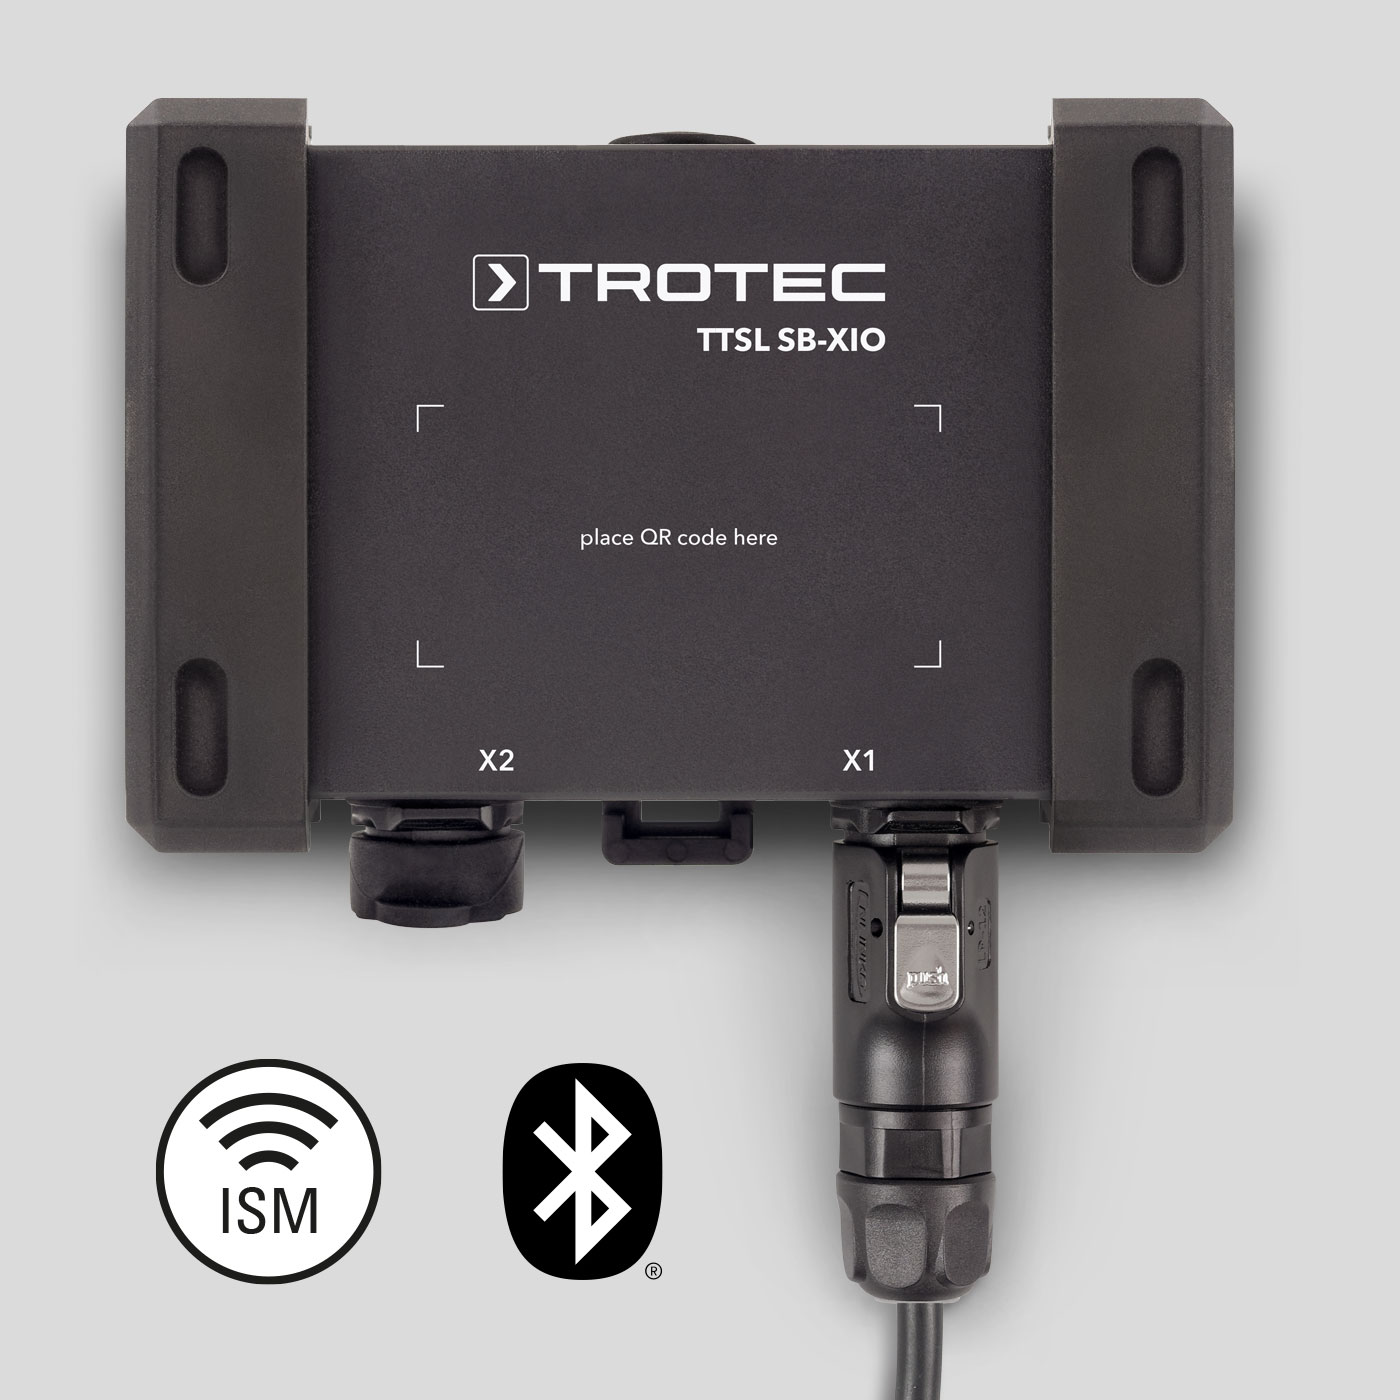 TTSL® SB-XIO draadloze sensorbox voor machines, installaties en sensorsystemen